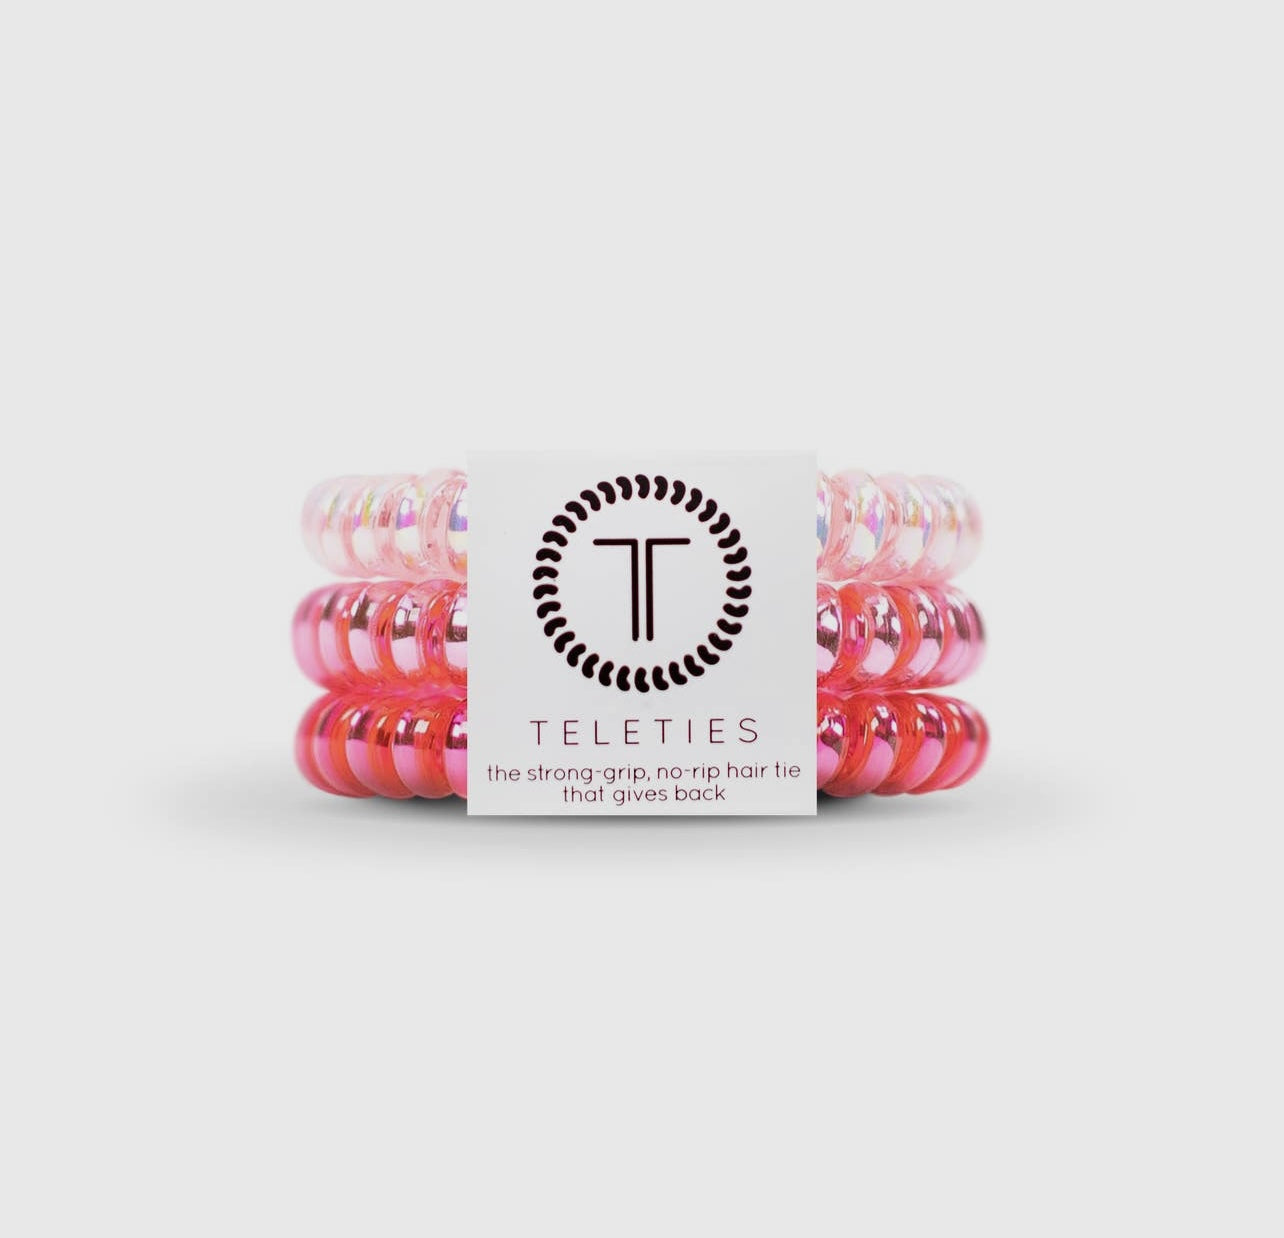 Think pink teletie hair ties.